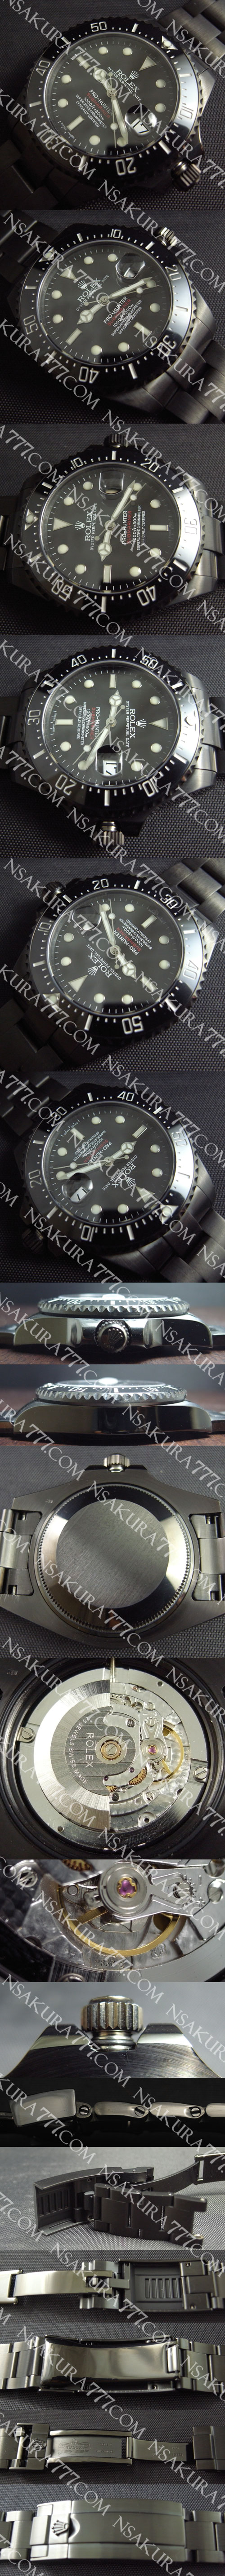 レプリカ時計 ロレックス サブマリーナ Asain2836－2 搭載 44ミリ - ウインドウを閉じる